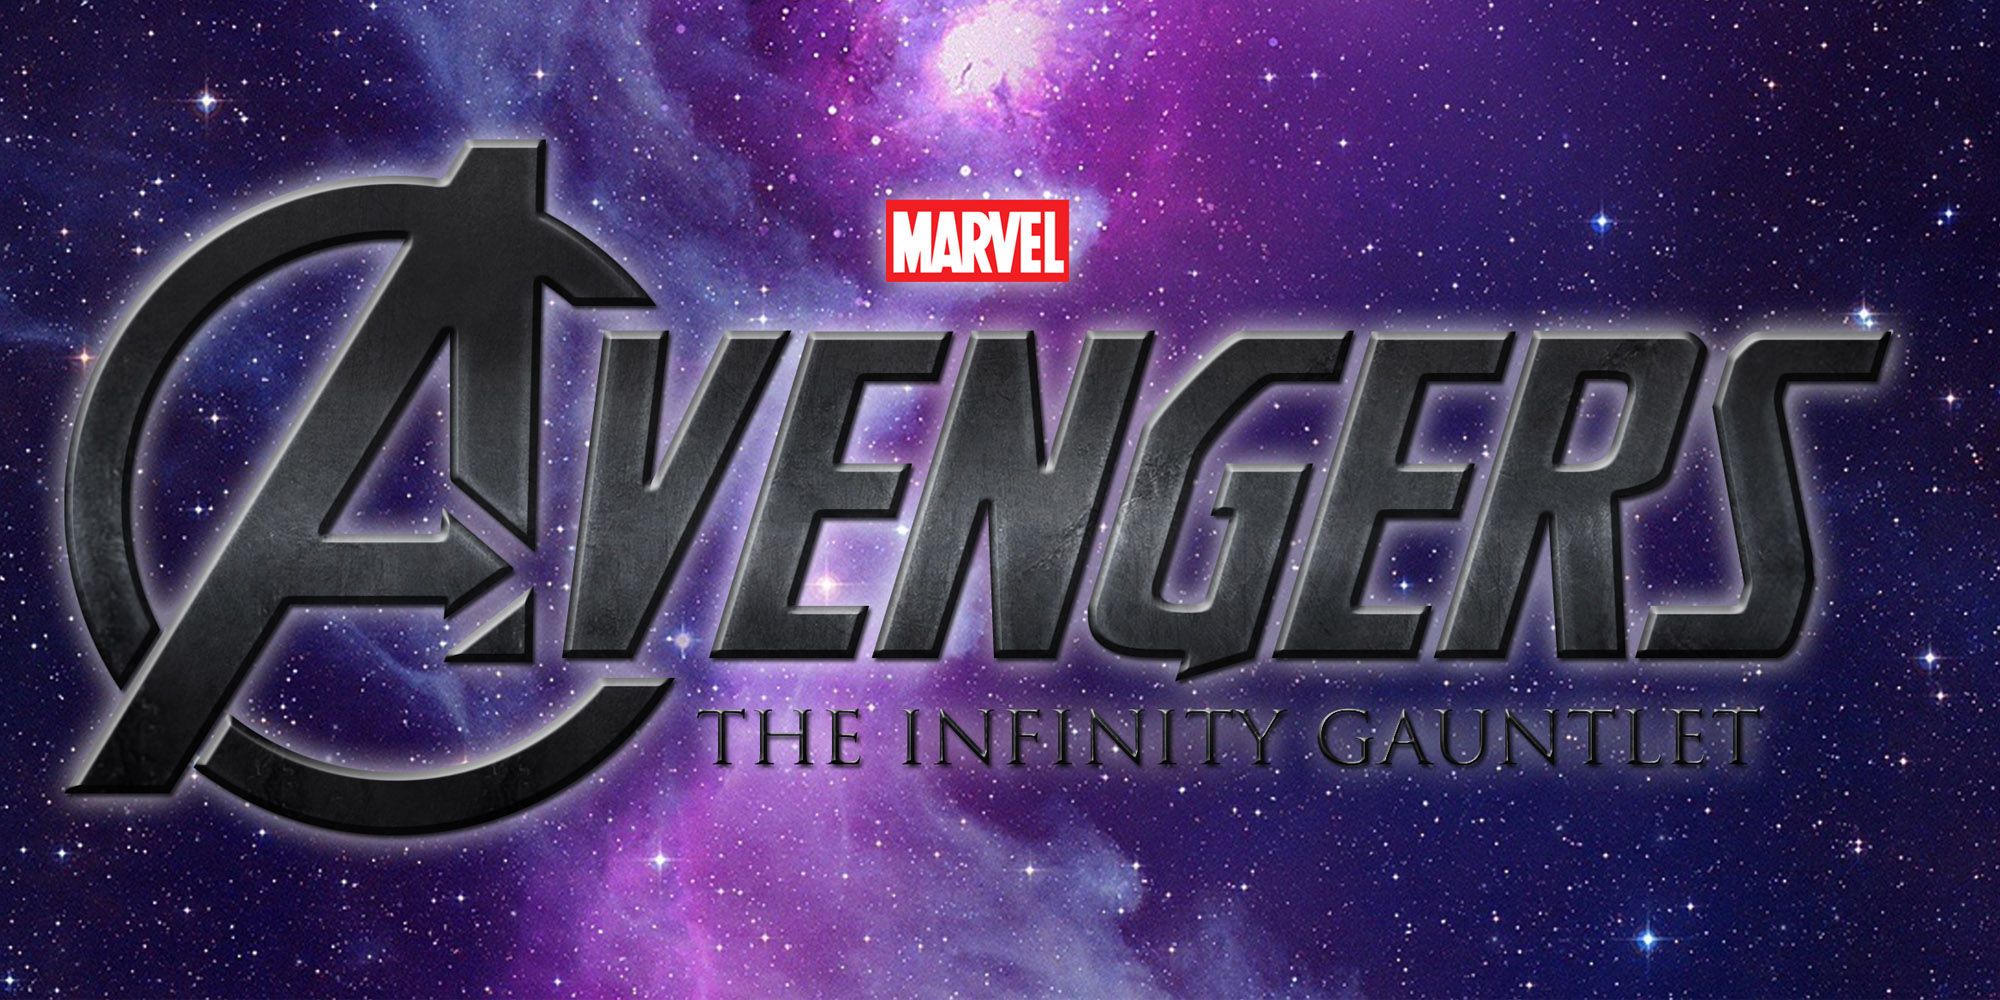 Avengers: Infinity Gauntlet Fan Logo by Joe Steiner